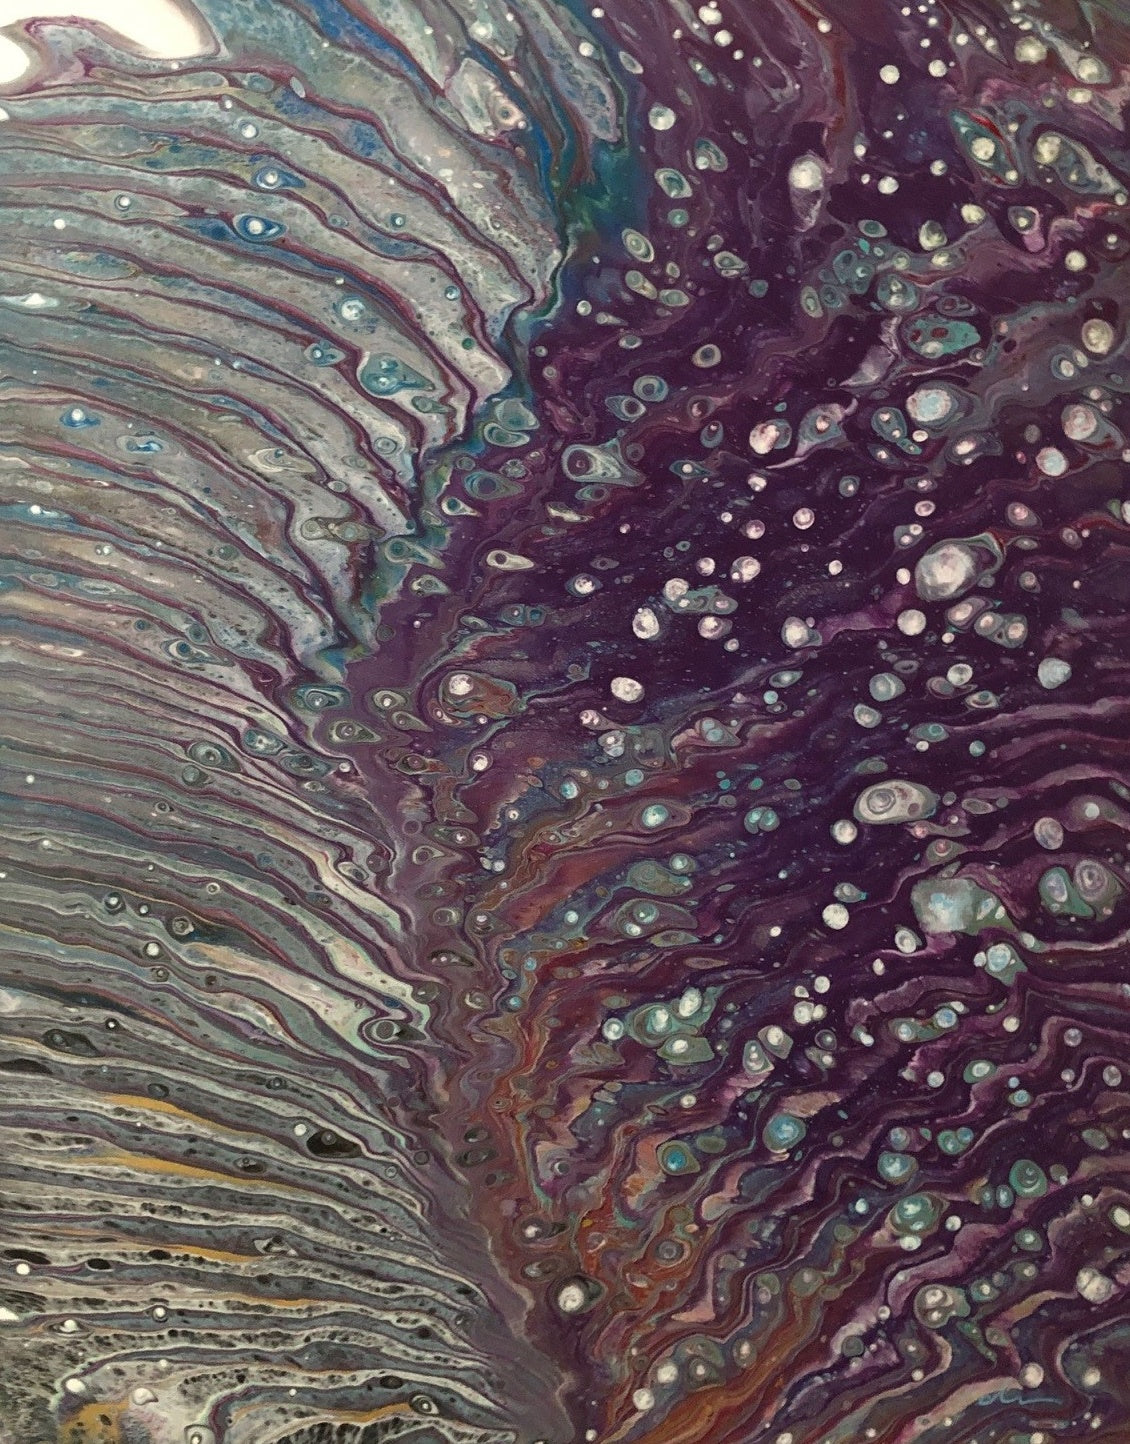 Dirty Pour - - Pour Painting Technique